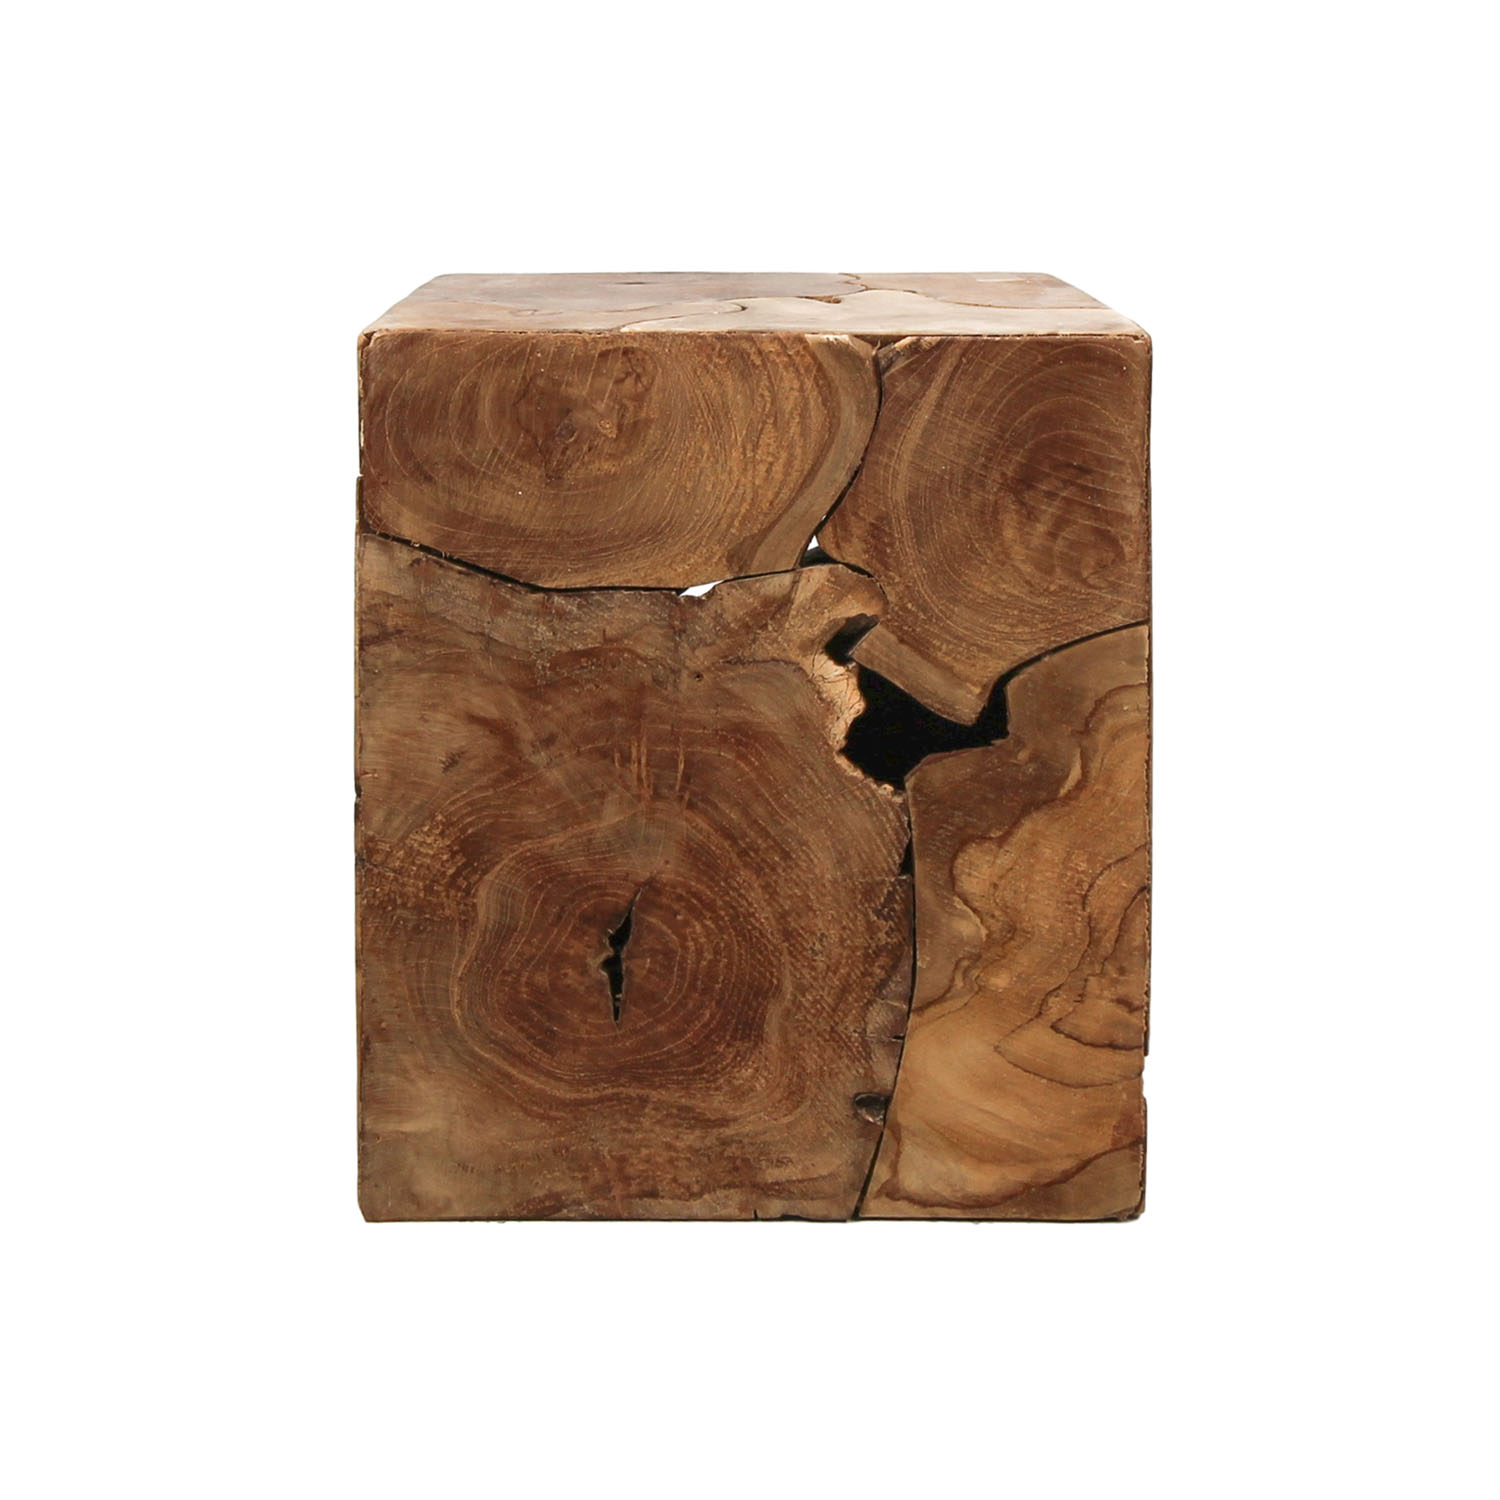 HSM COLLECTION Cube sidebord, kvadratisk - natur teaktræ (30x30)